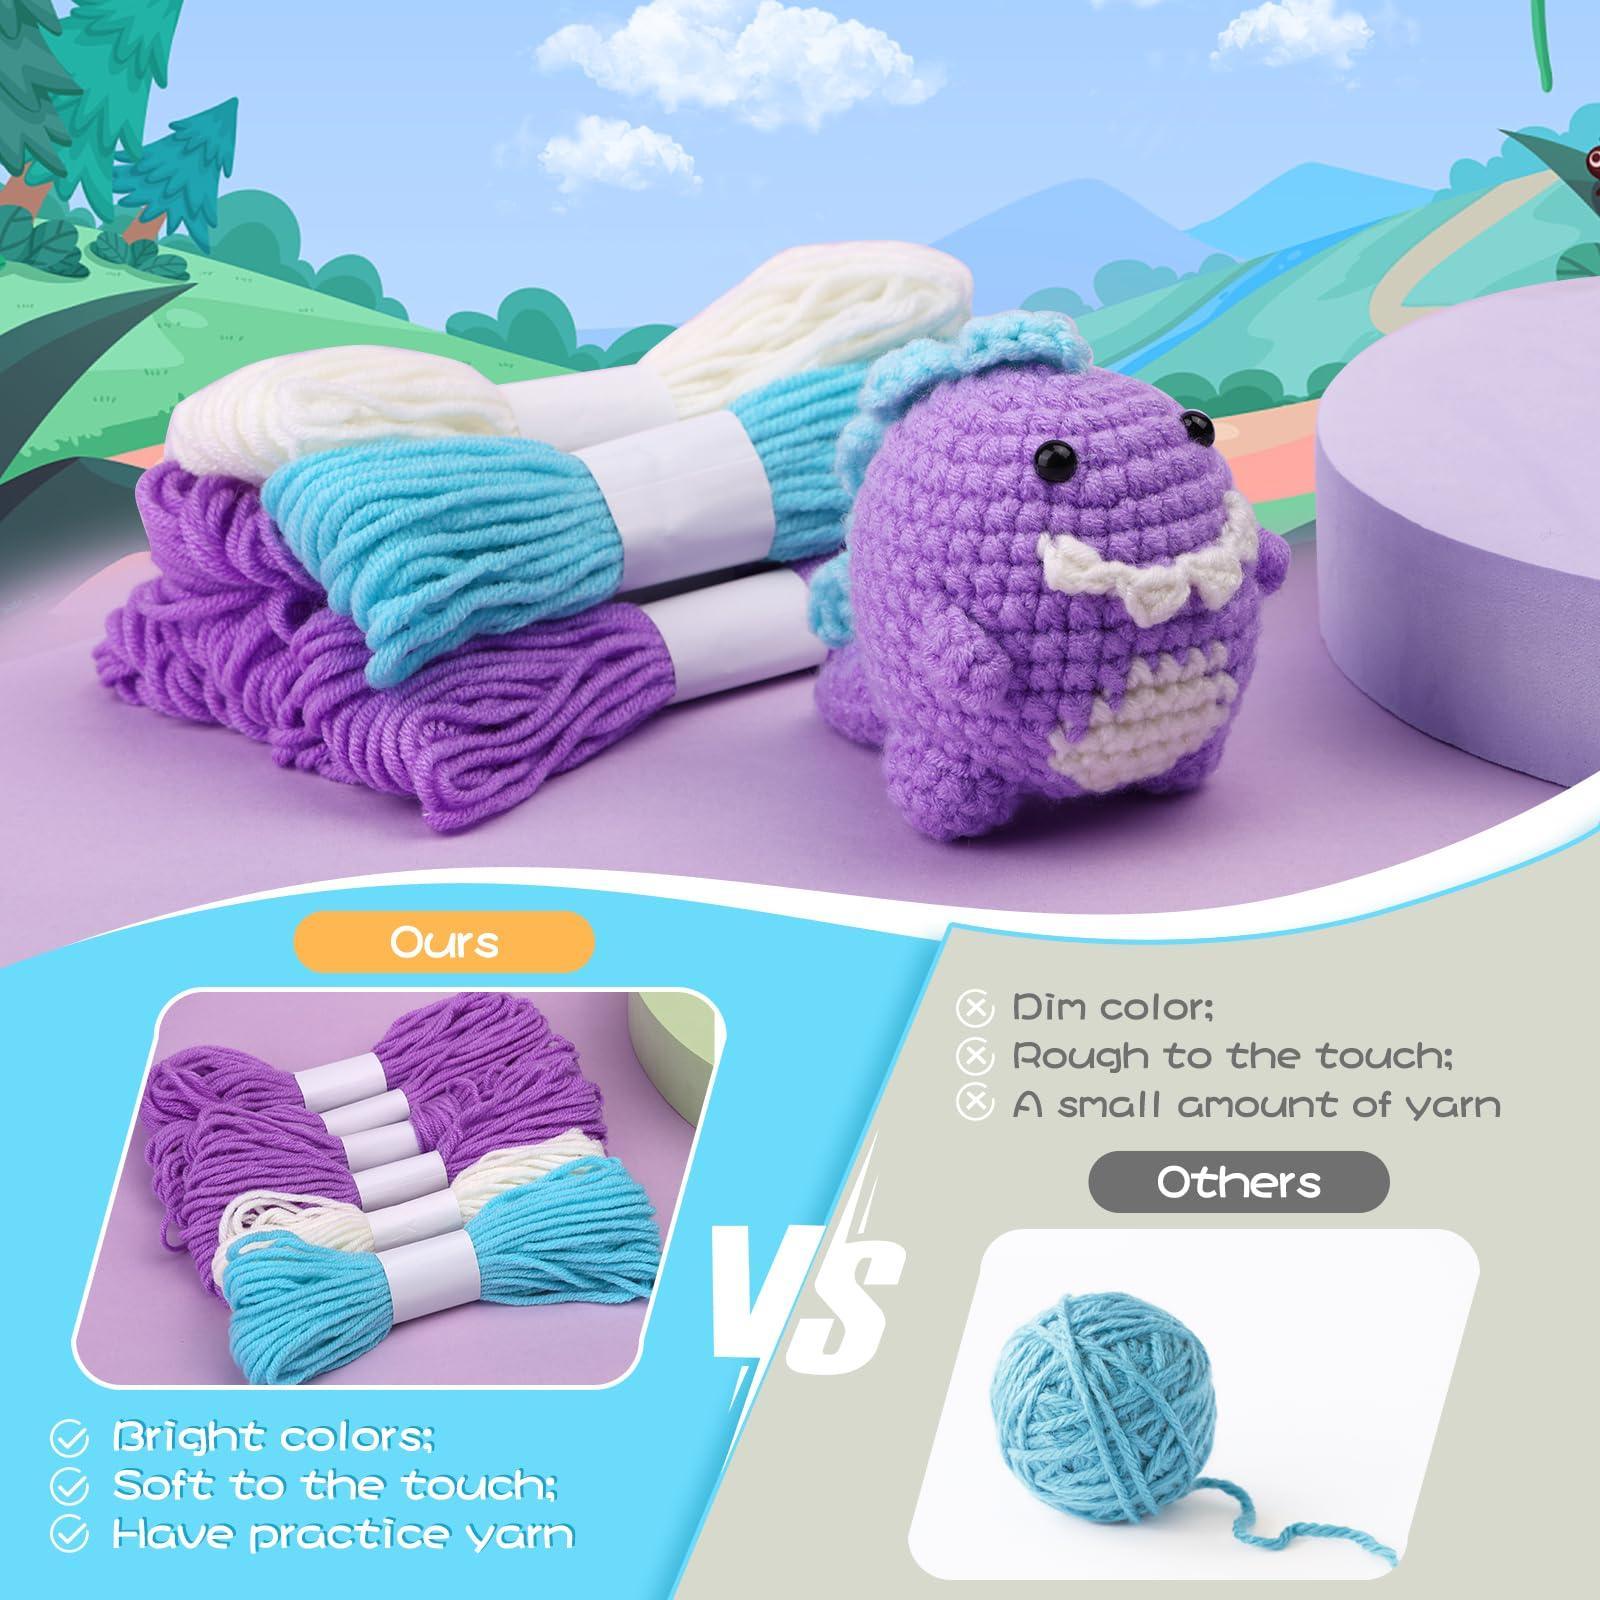 Purple Dinosaur Crochet Kit for Beginners